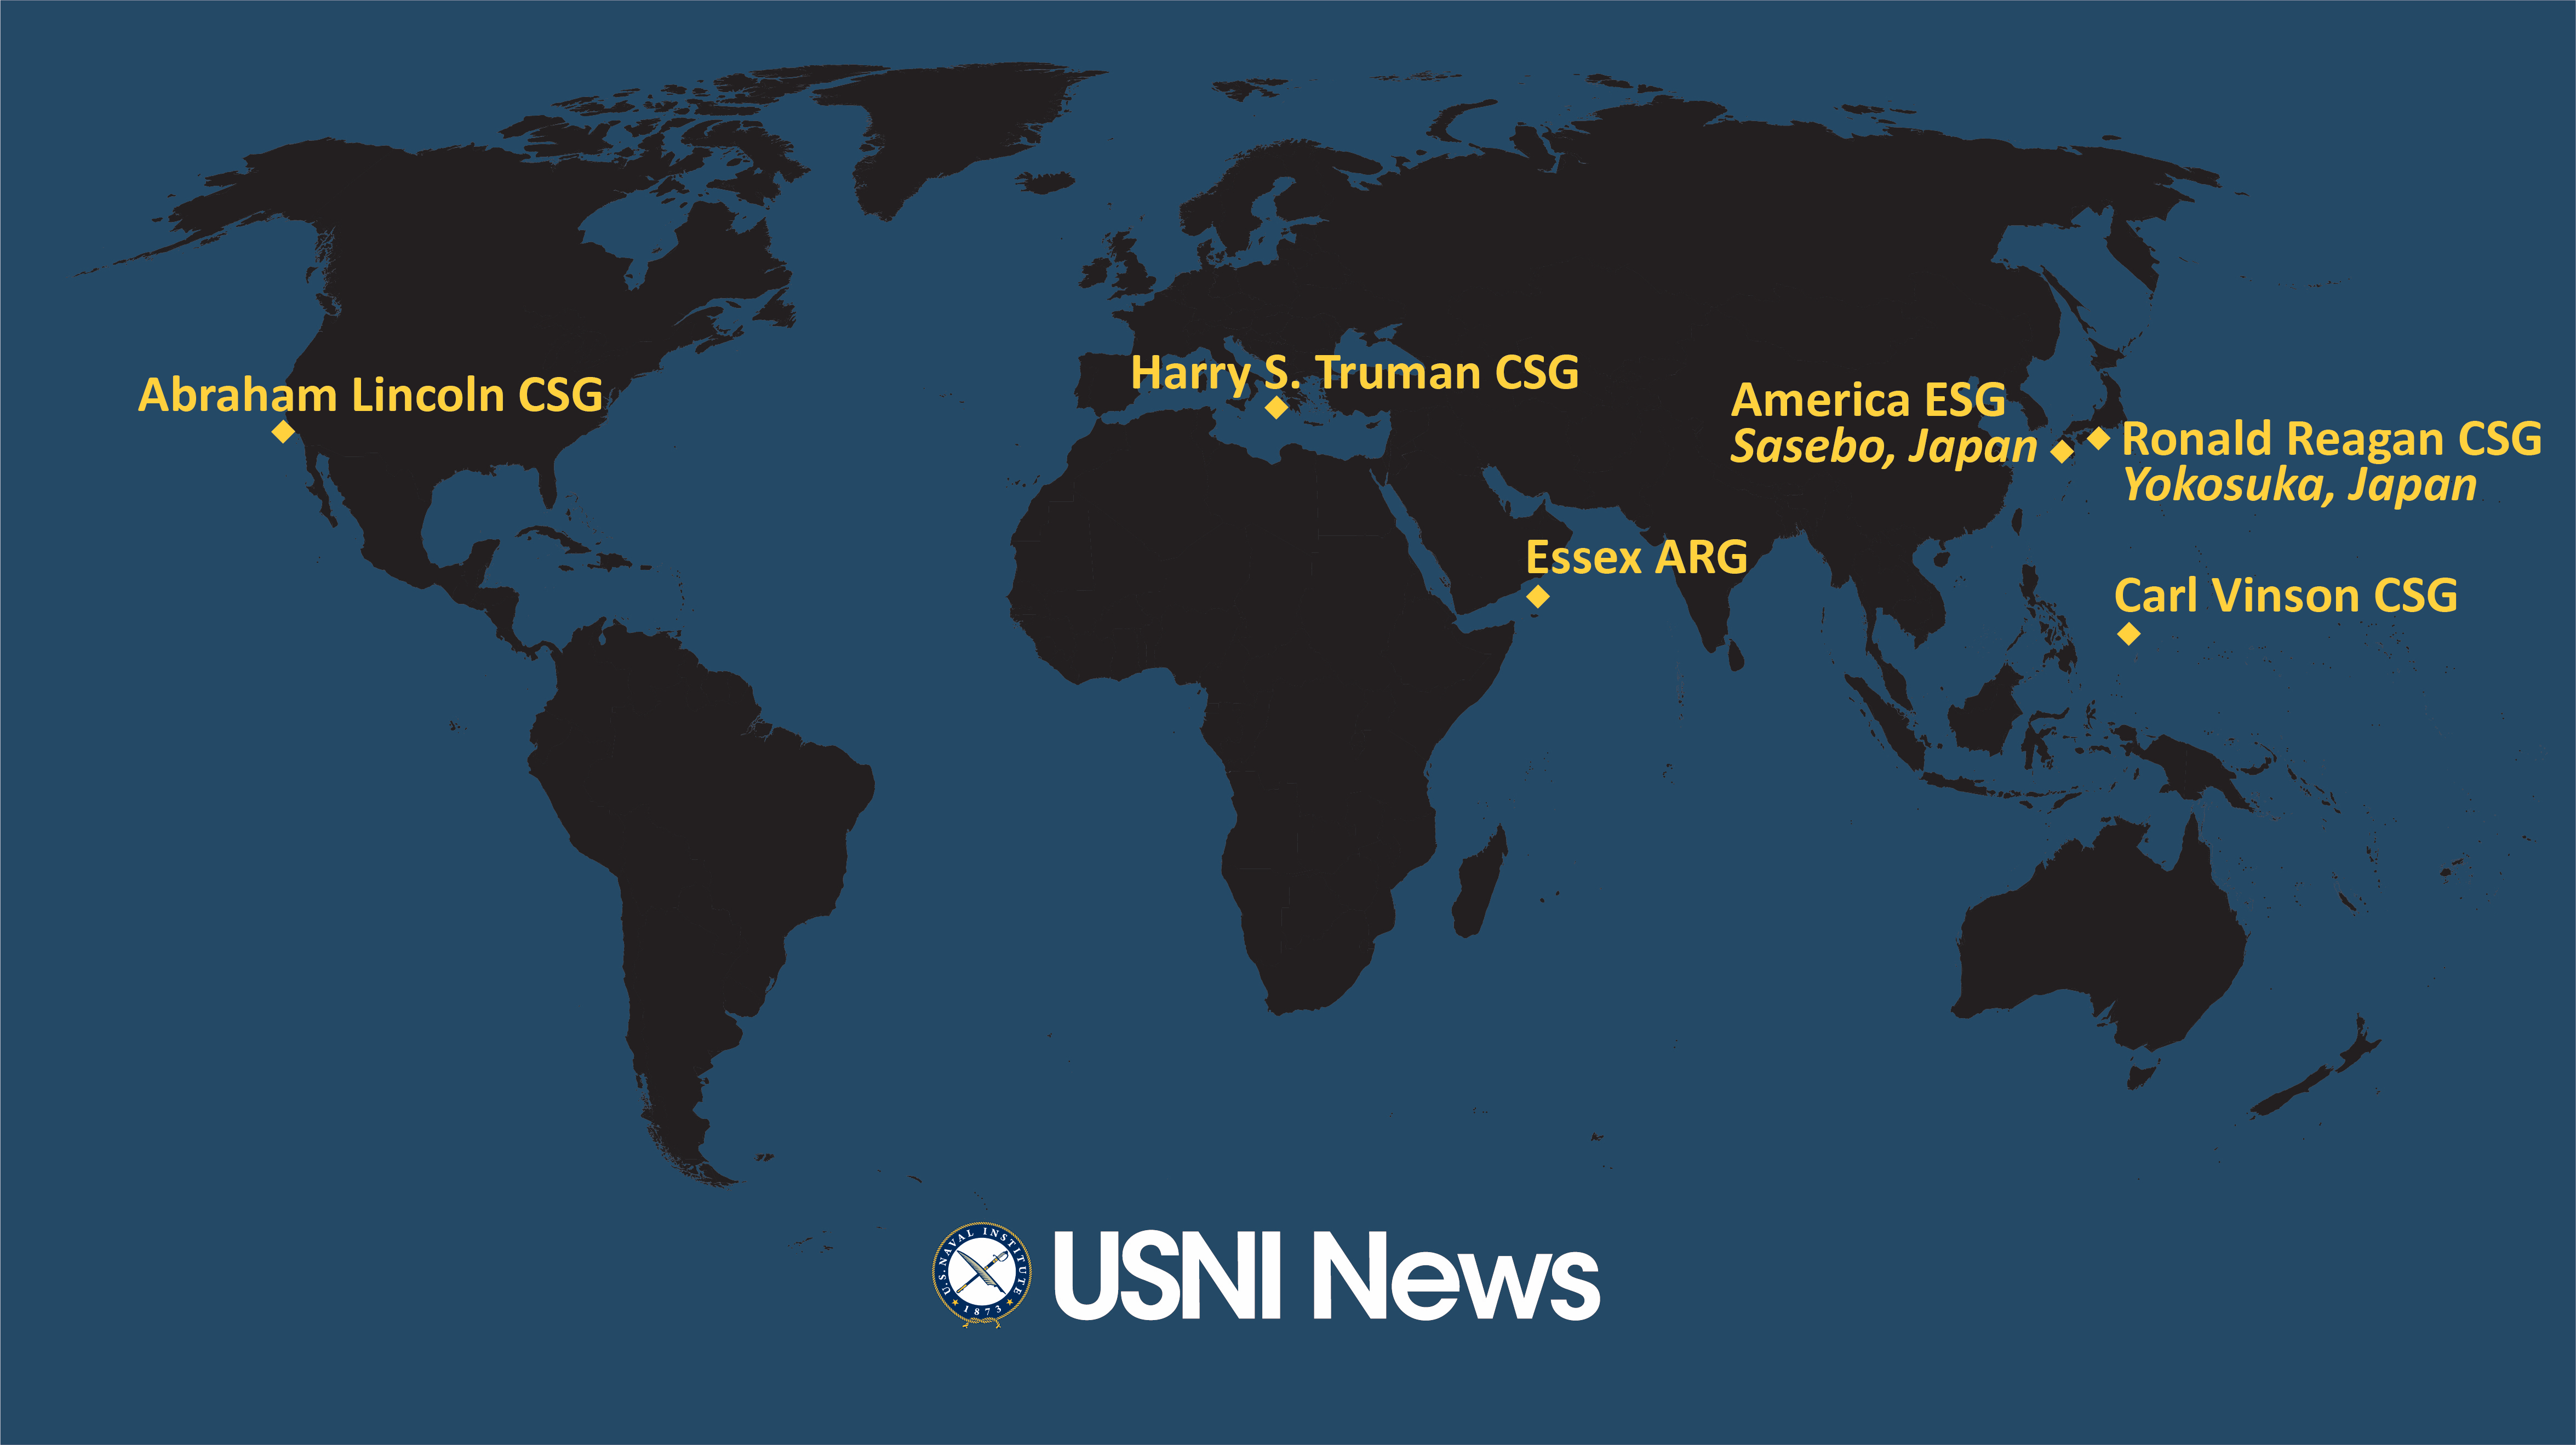 Meu Deployment Schedule 2022 Usni News Fleet And Marine Tracker: Jan. 3, 2022